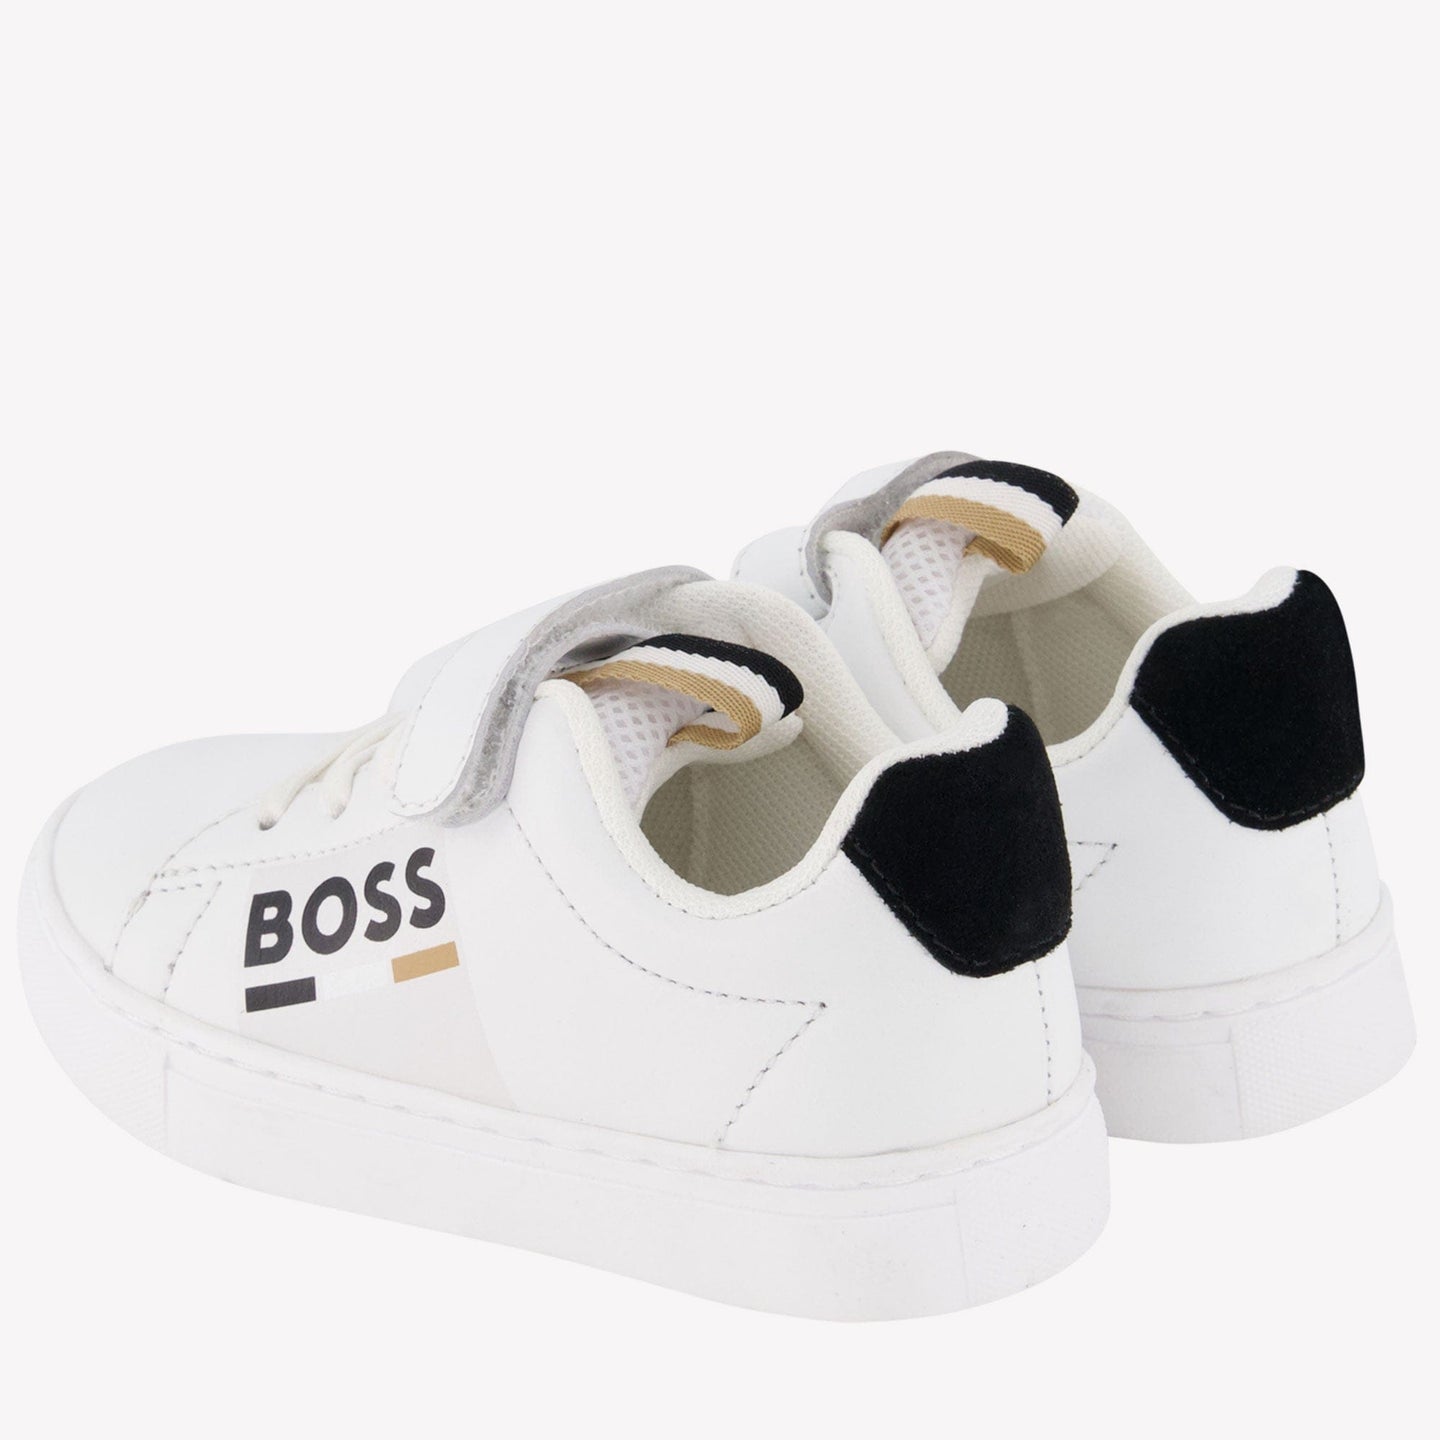 Boss Jongens Sneakers Wit 19